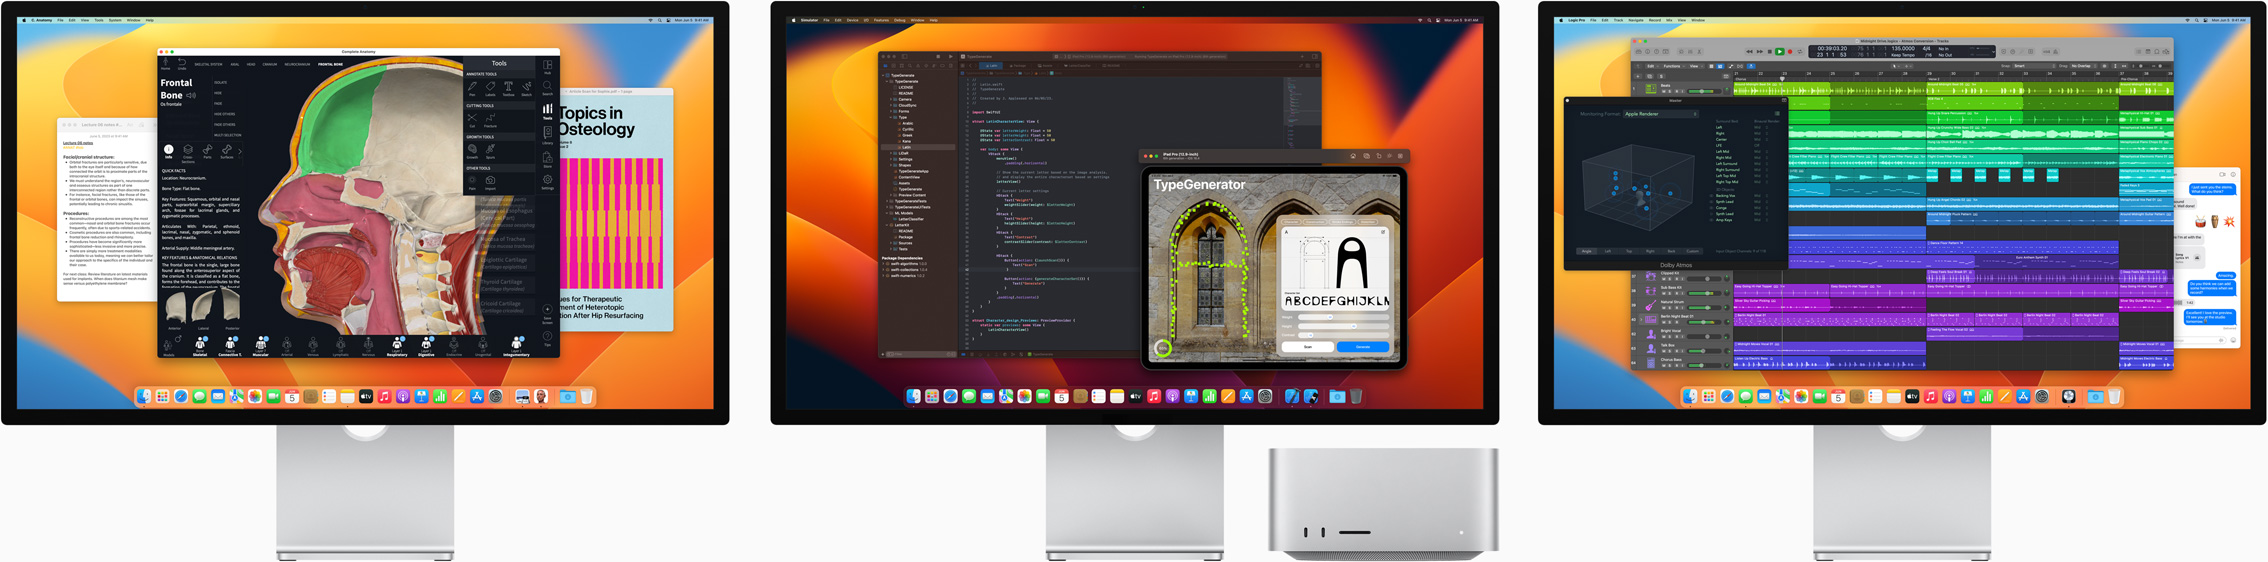 Mac Studio і три монітори Studio Display, на кожному з яких відкрито різні додатки